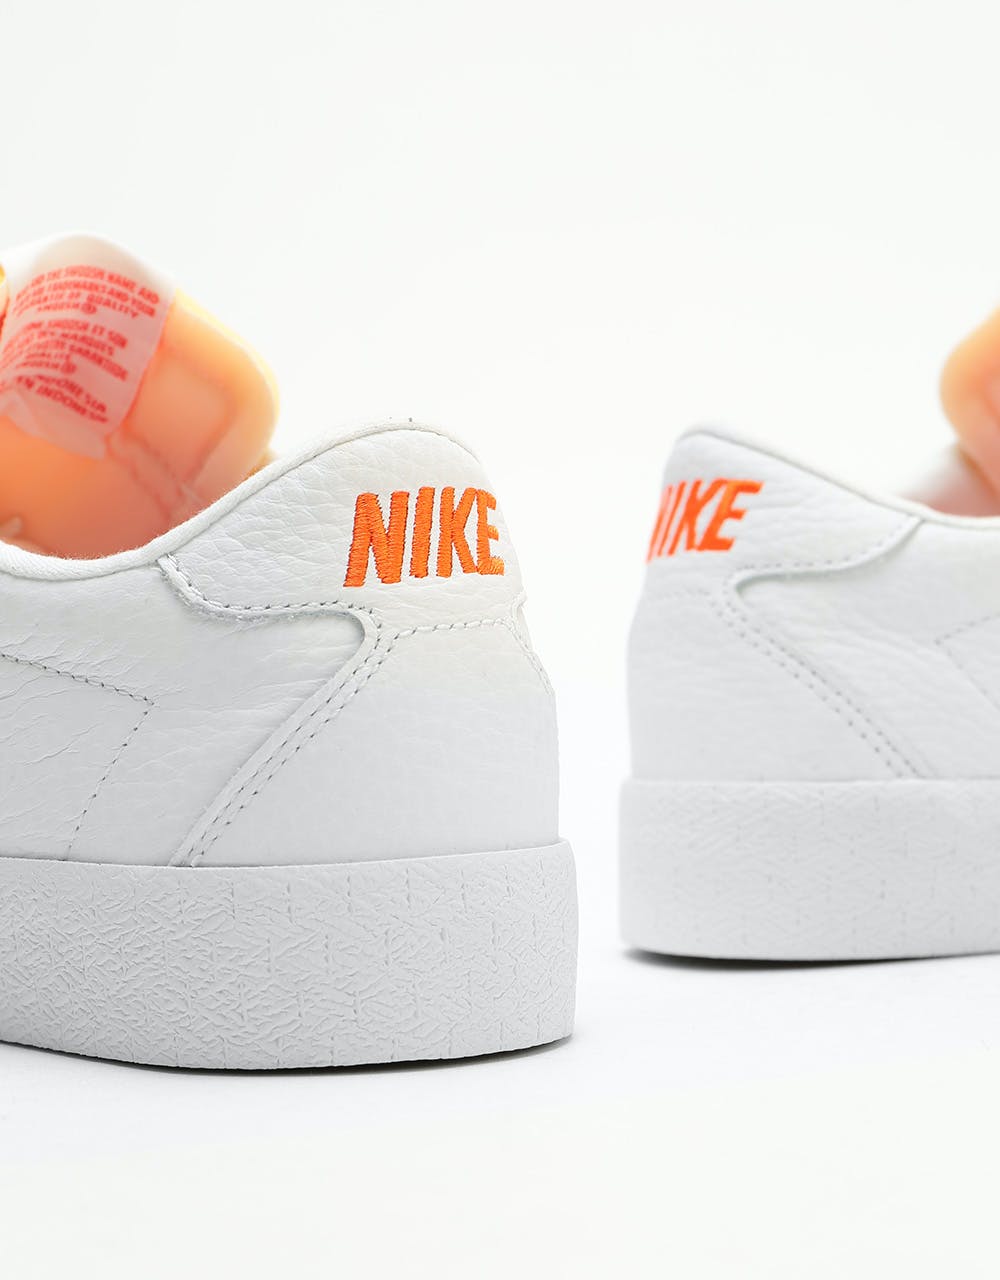 Nike SB Zoom Bruin Skate Shoes - White/Team Orange-White-Gum Light Bro